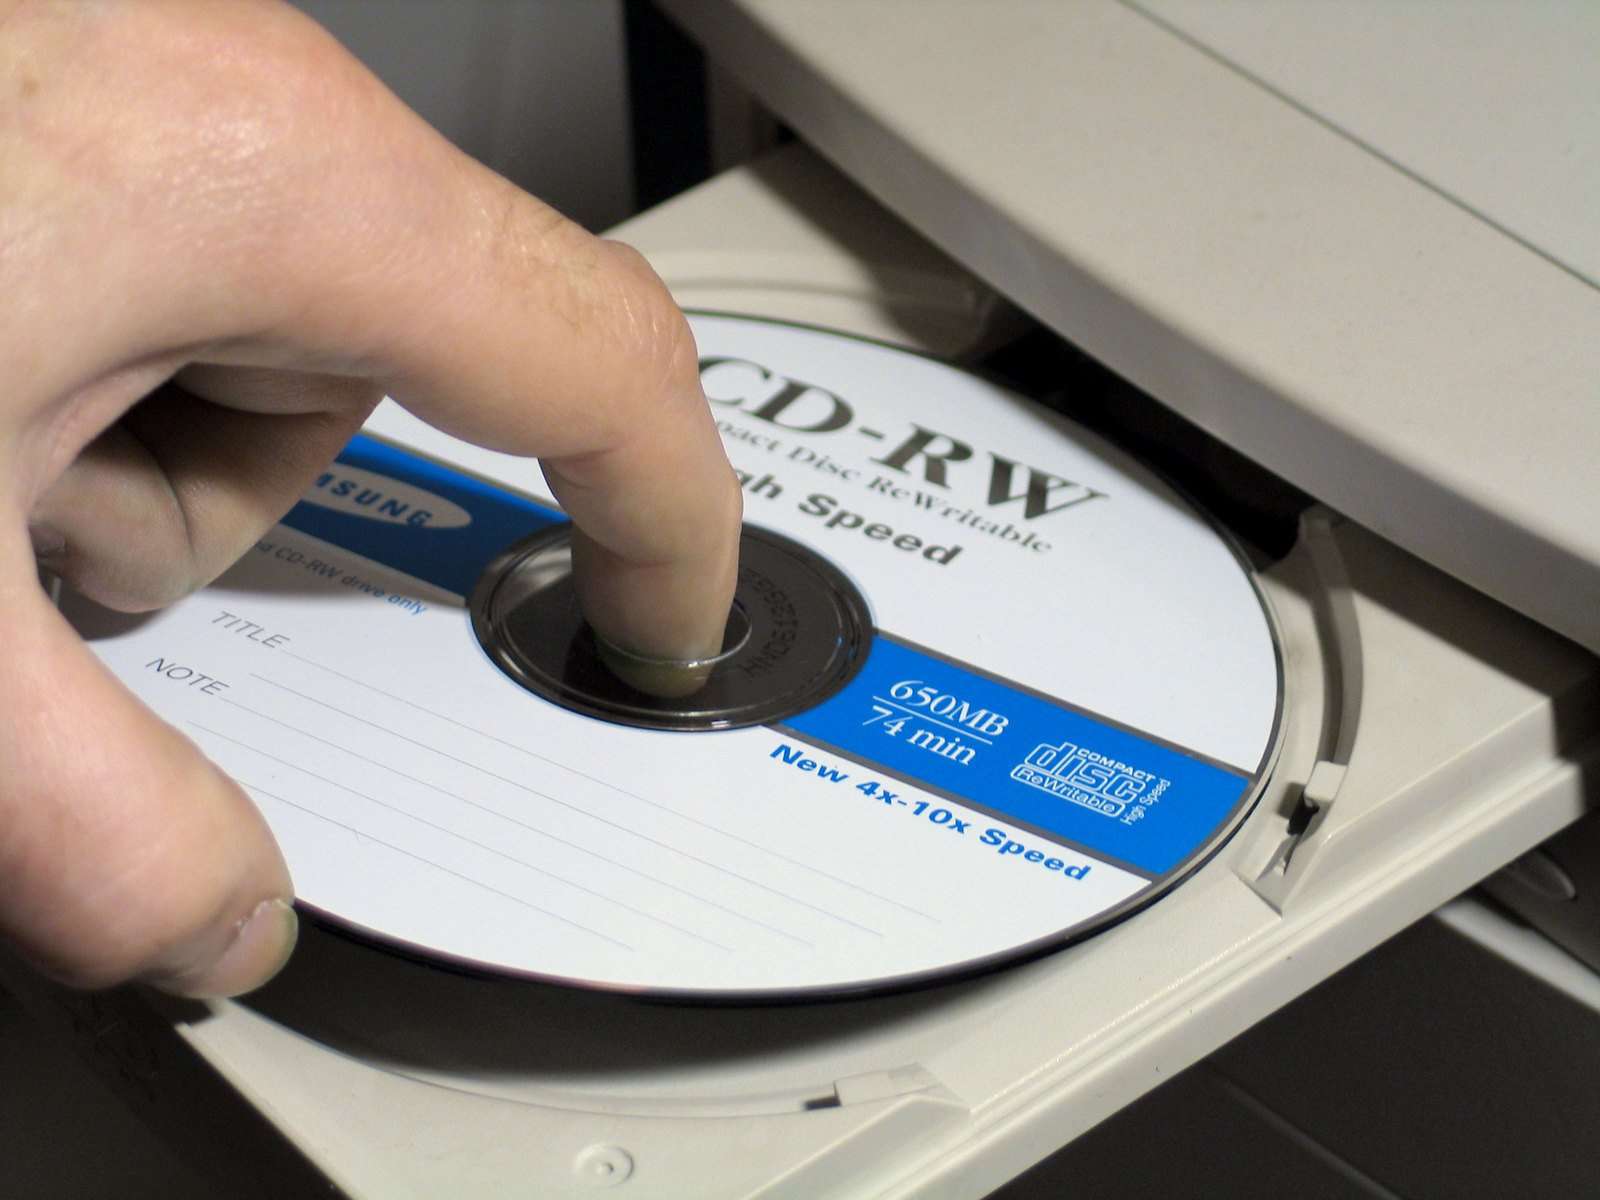 Lector CD externo: ¡Reproduce y graba tus CDs fácilmente!